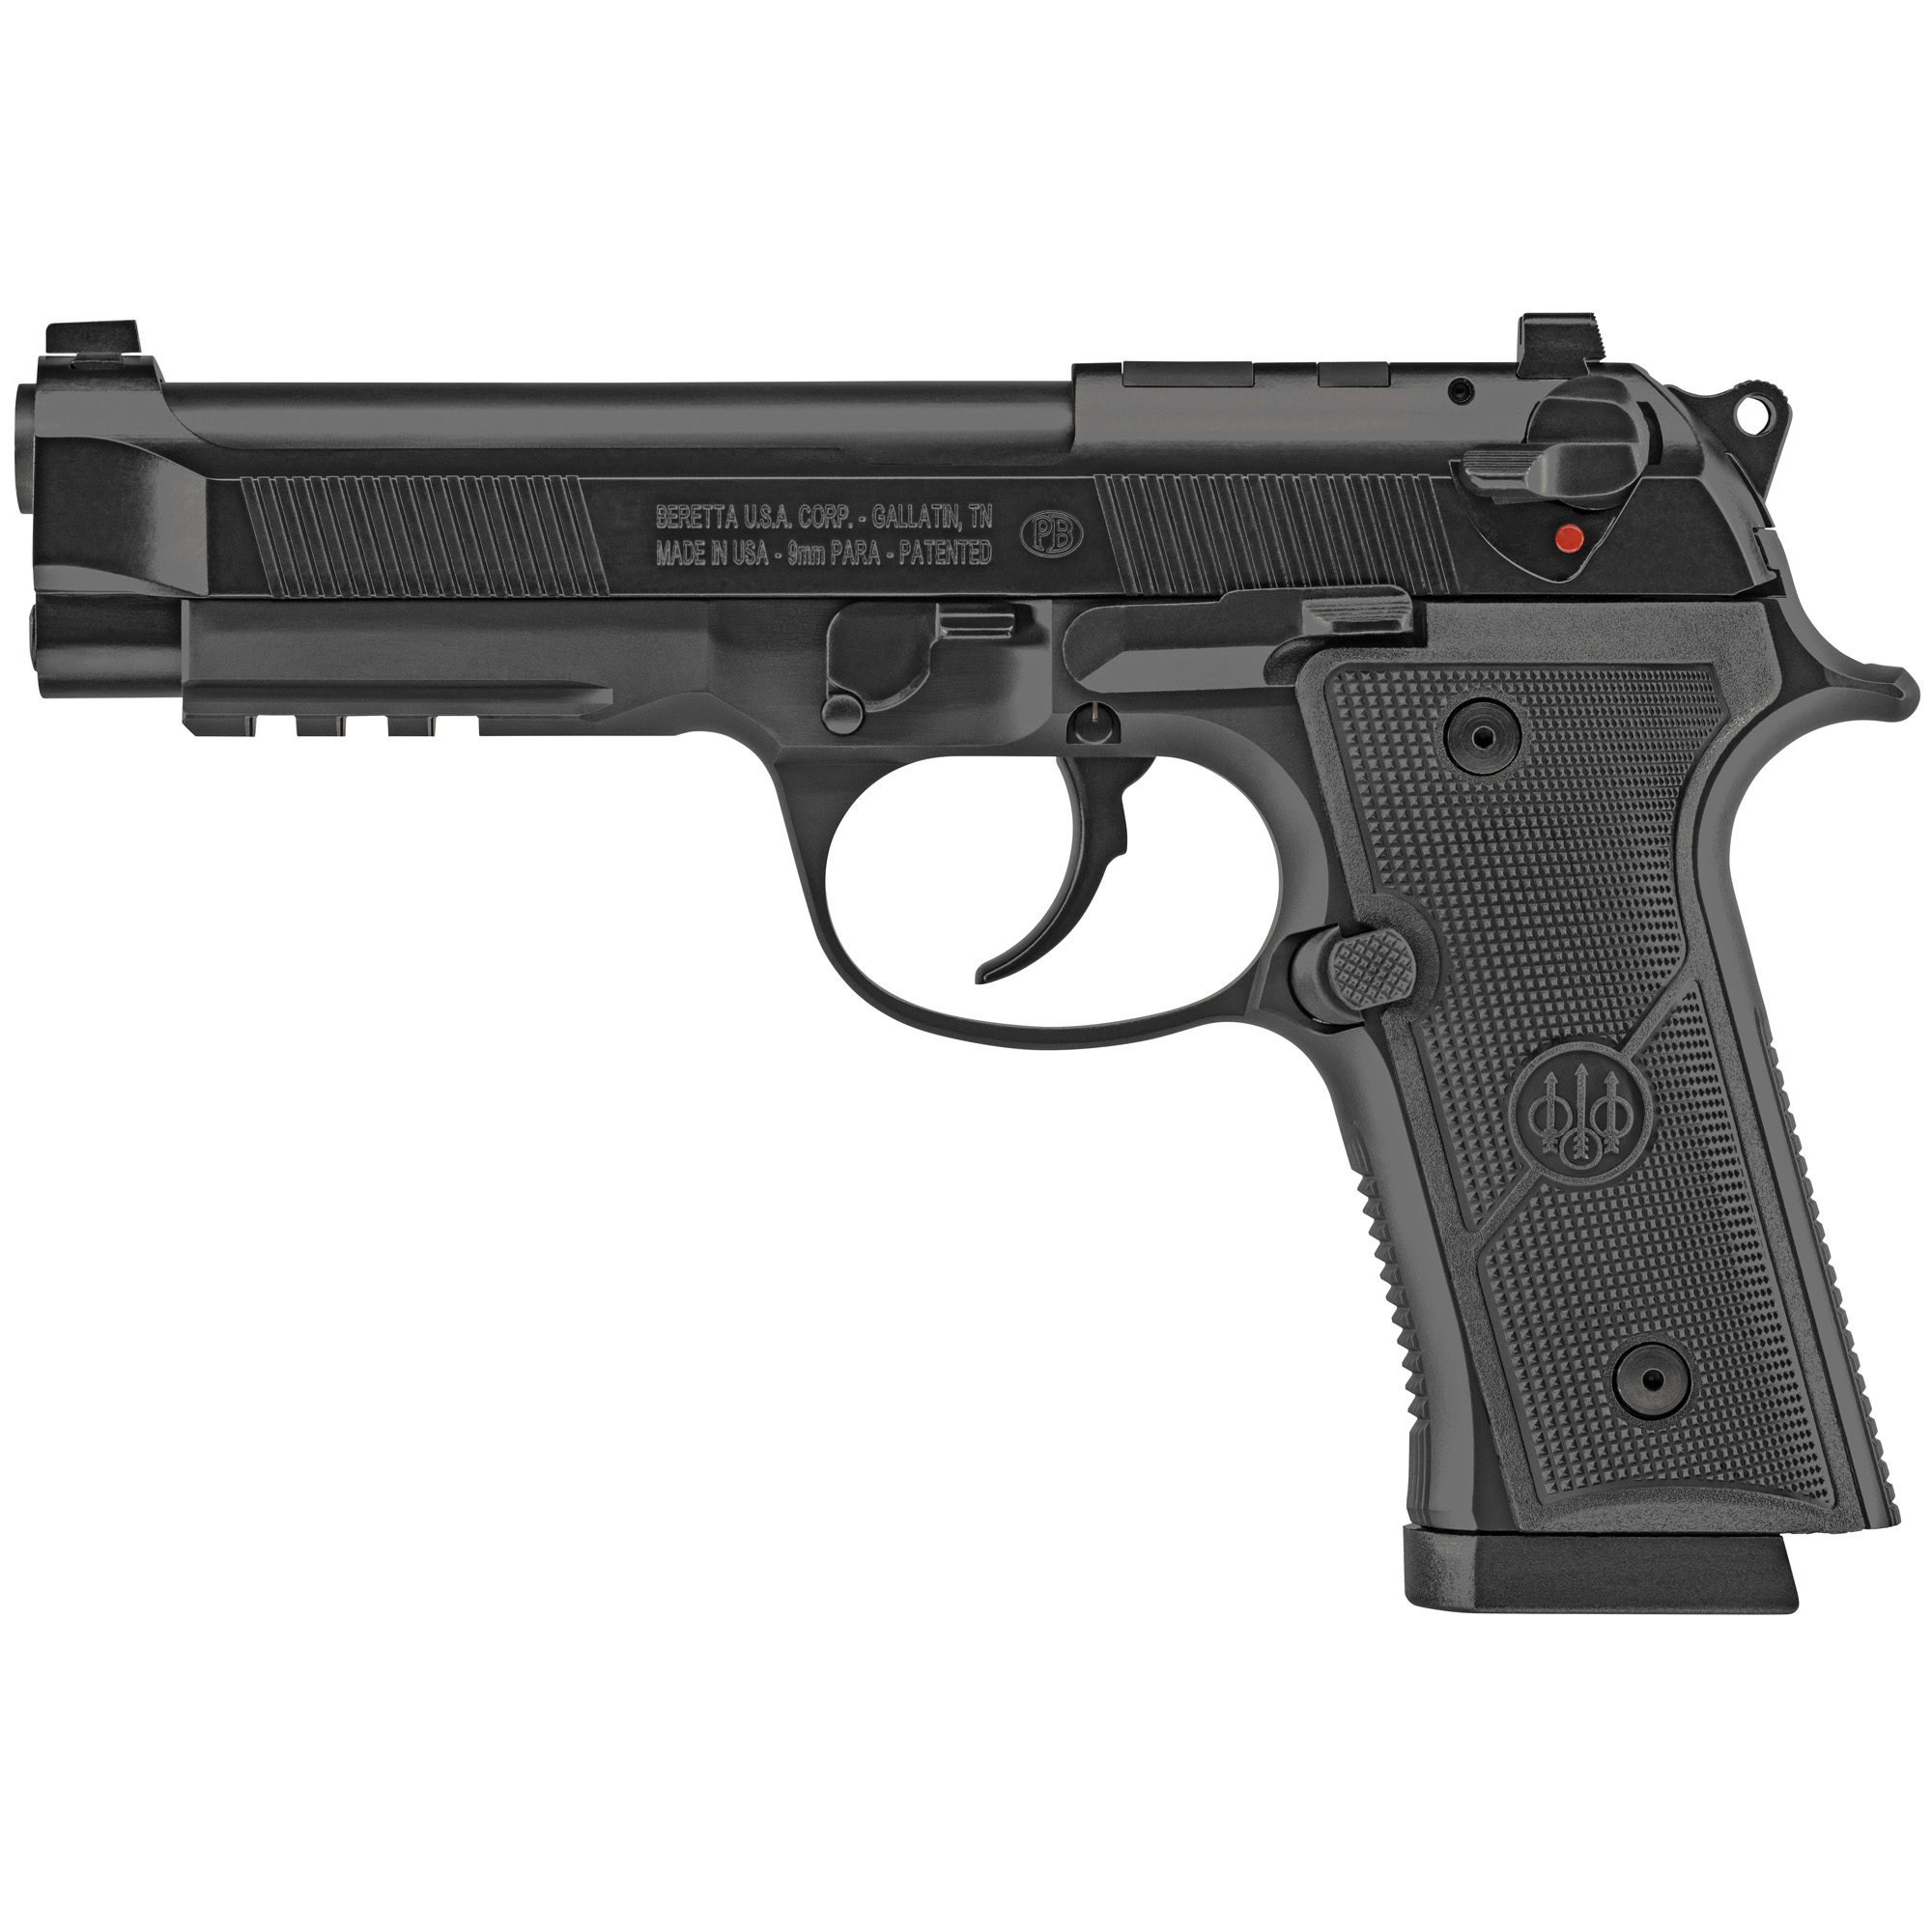 Beretta USA J92FR921G70 92X RDO 9mm Luger 18+1 4.70